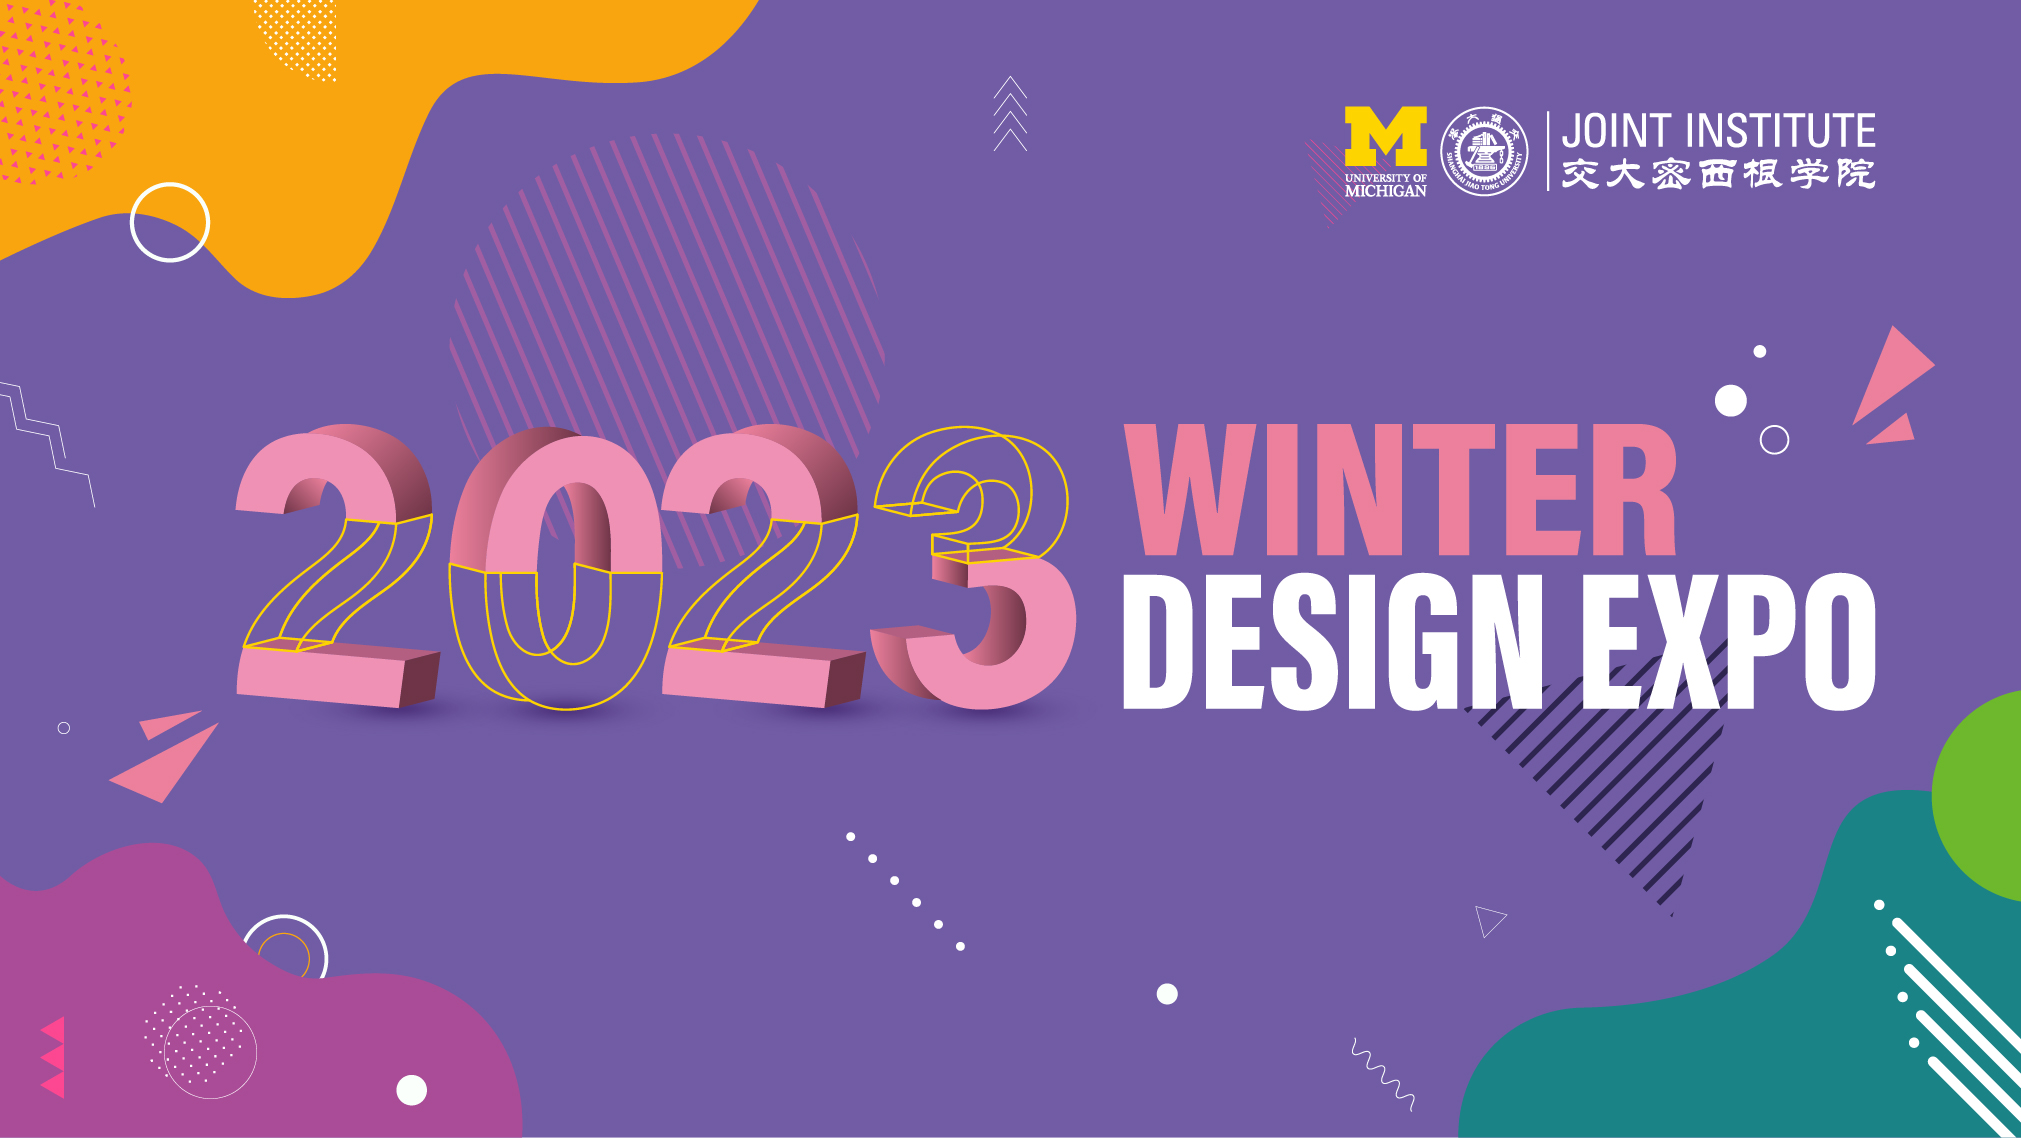 Design Expo Winter 2020